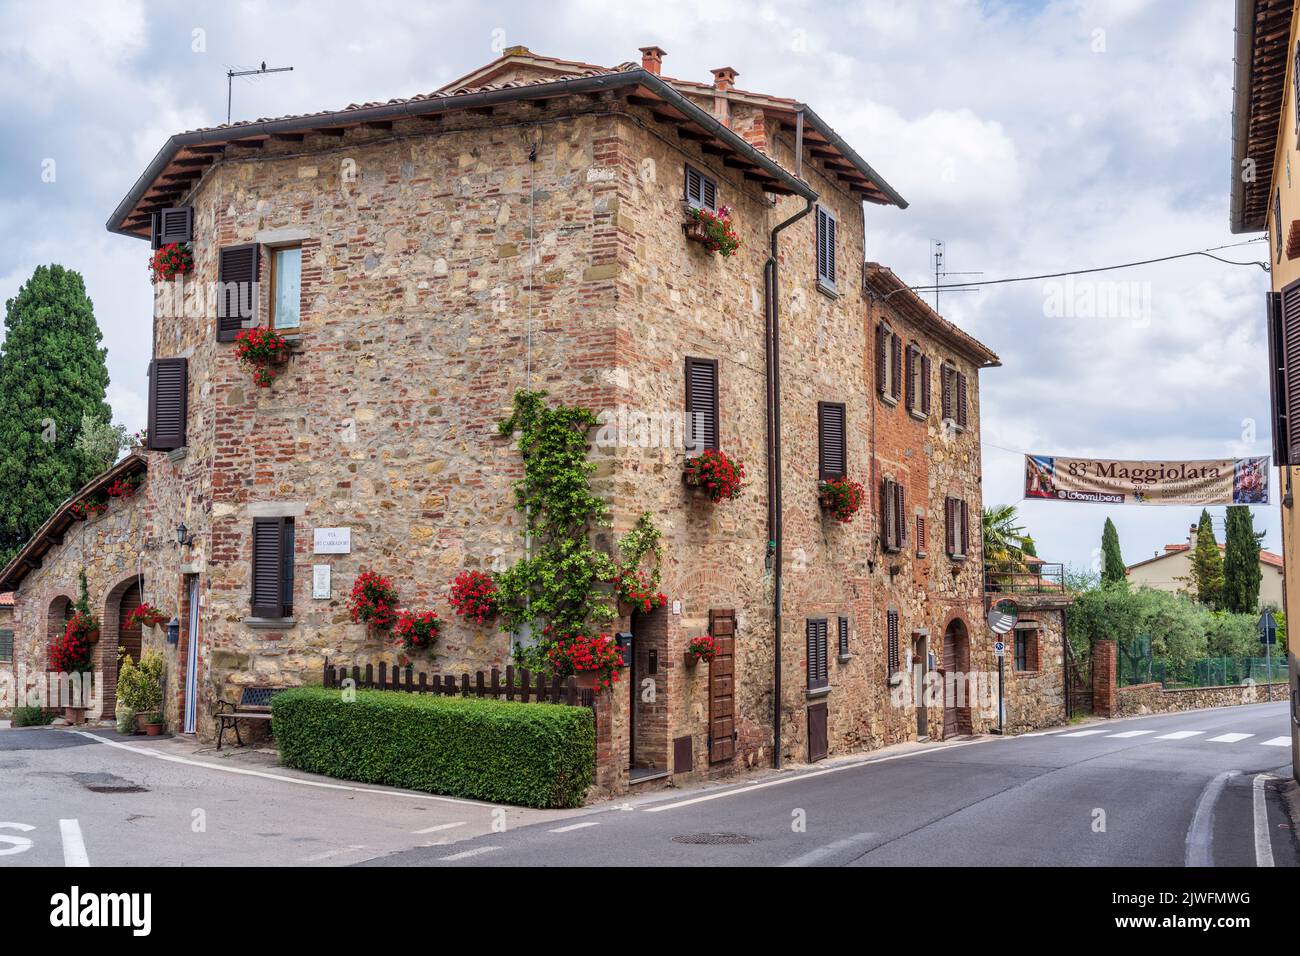 House on the corner of Via dei Carradori and Via della Repubblica in the medieval hilltop town of Lucignano in the Val di Chiana in Tuscany, Italy Stock Photo